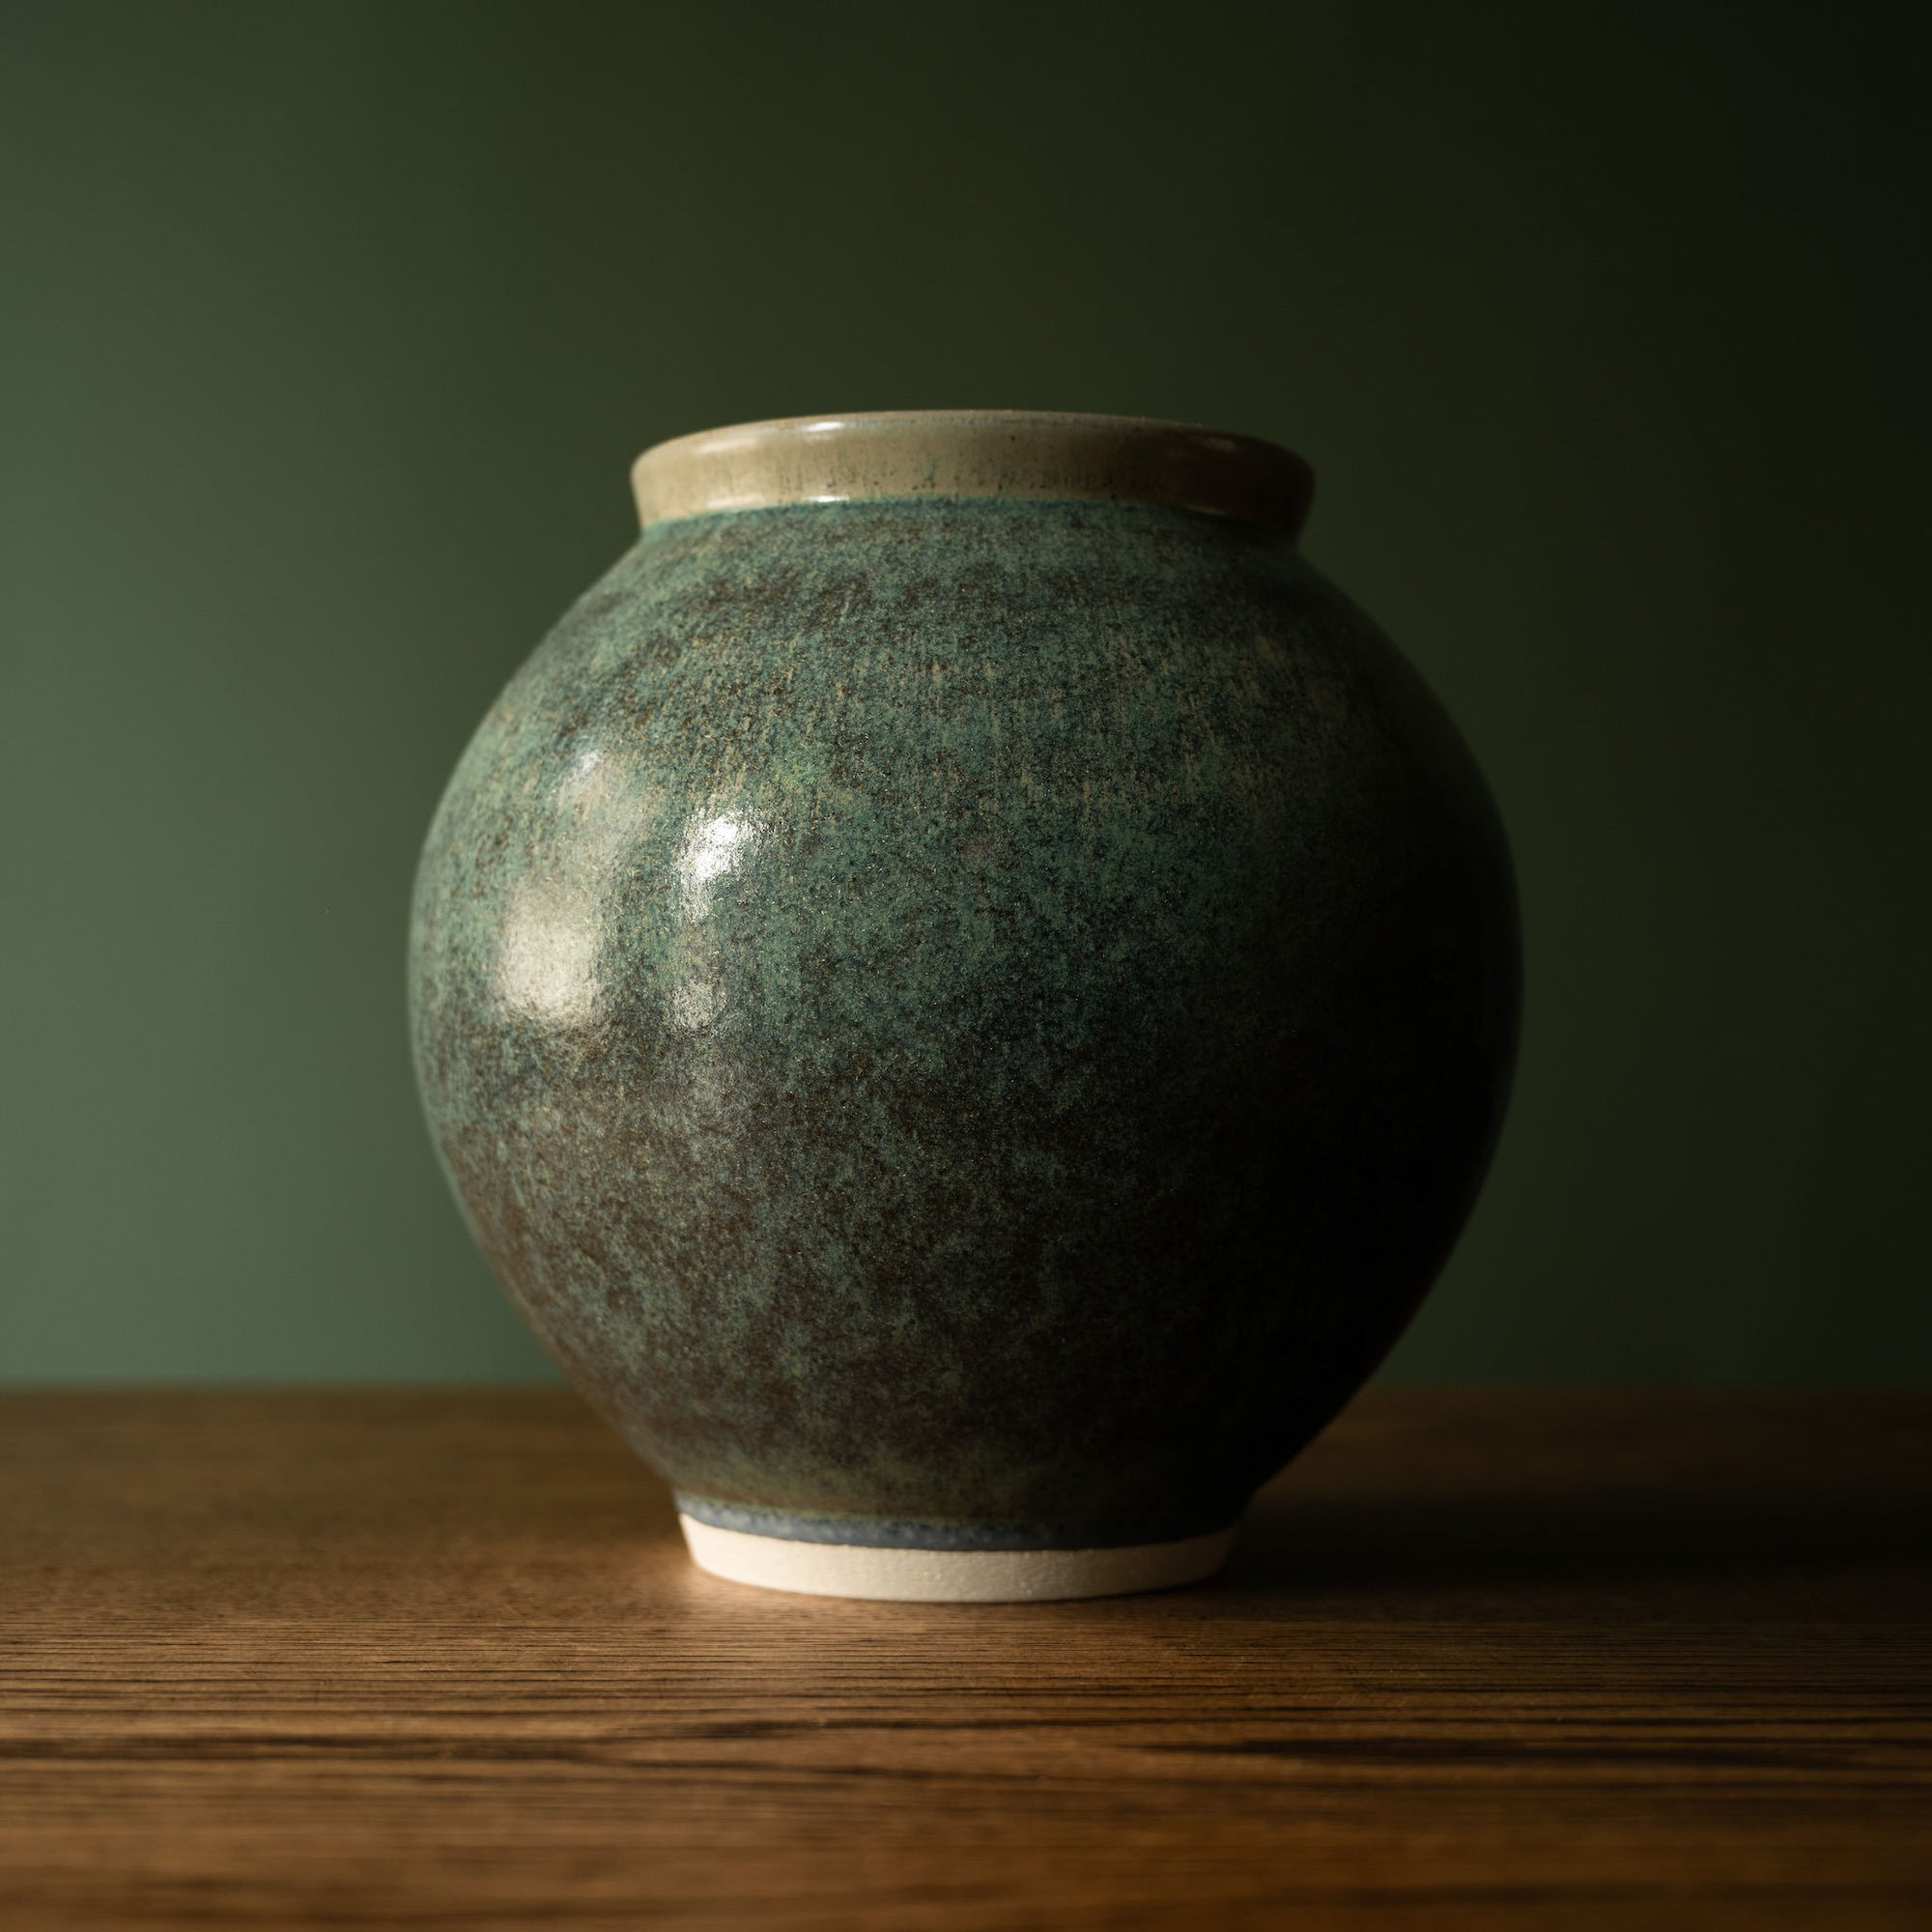 Pottery West Stoneware Rounded Vase in Nori glaze